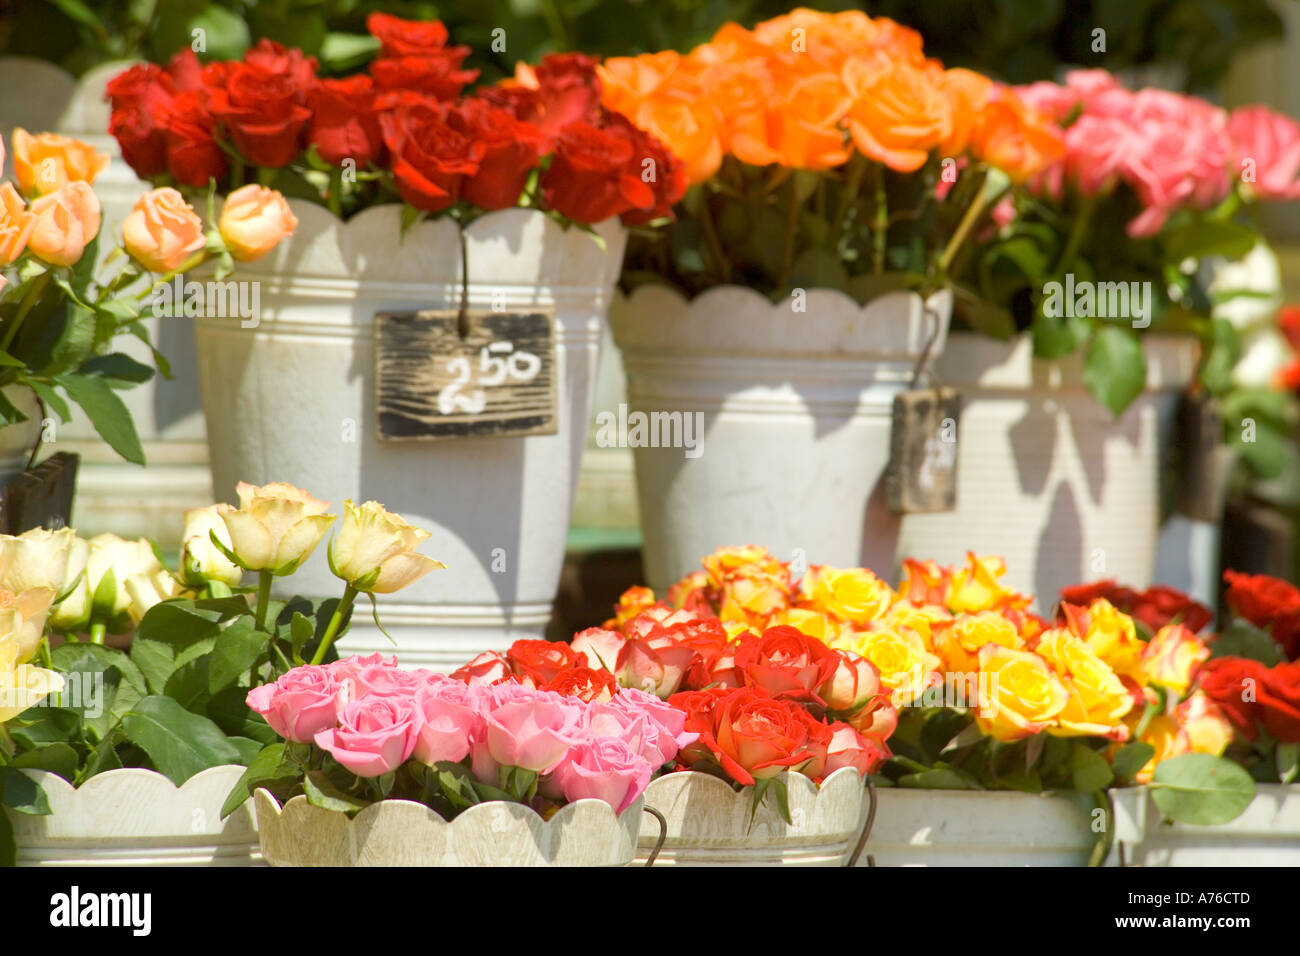 Rangées de conteneurs pleins de couleurs roses (rosa) à vendre à la place principale. Banque D'Images